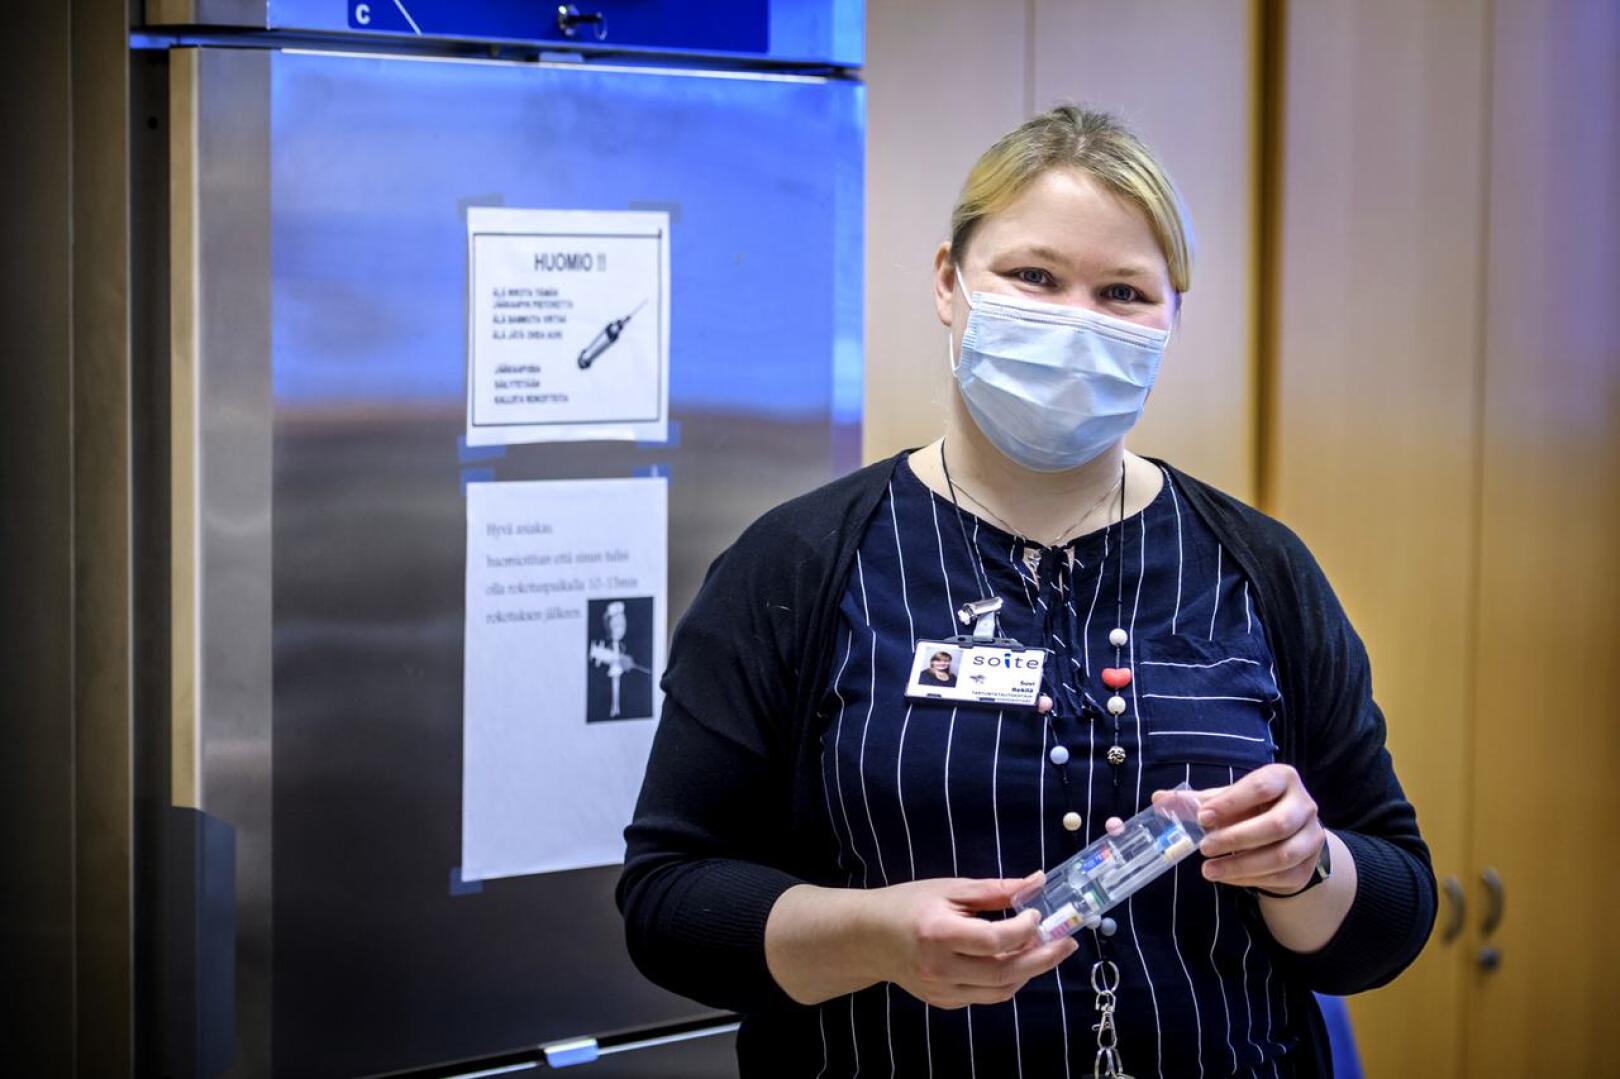 Tartuntatautihoitaja Suvi Rekilä Soitesta kertoo, että Soiten alueella rokotuskattavuus on ollut jo pitkään kattava ja laumasuojan antava tarttuville taudeille.